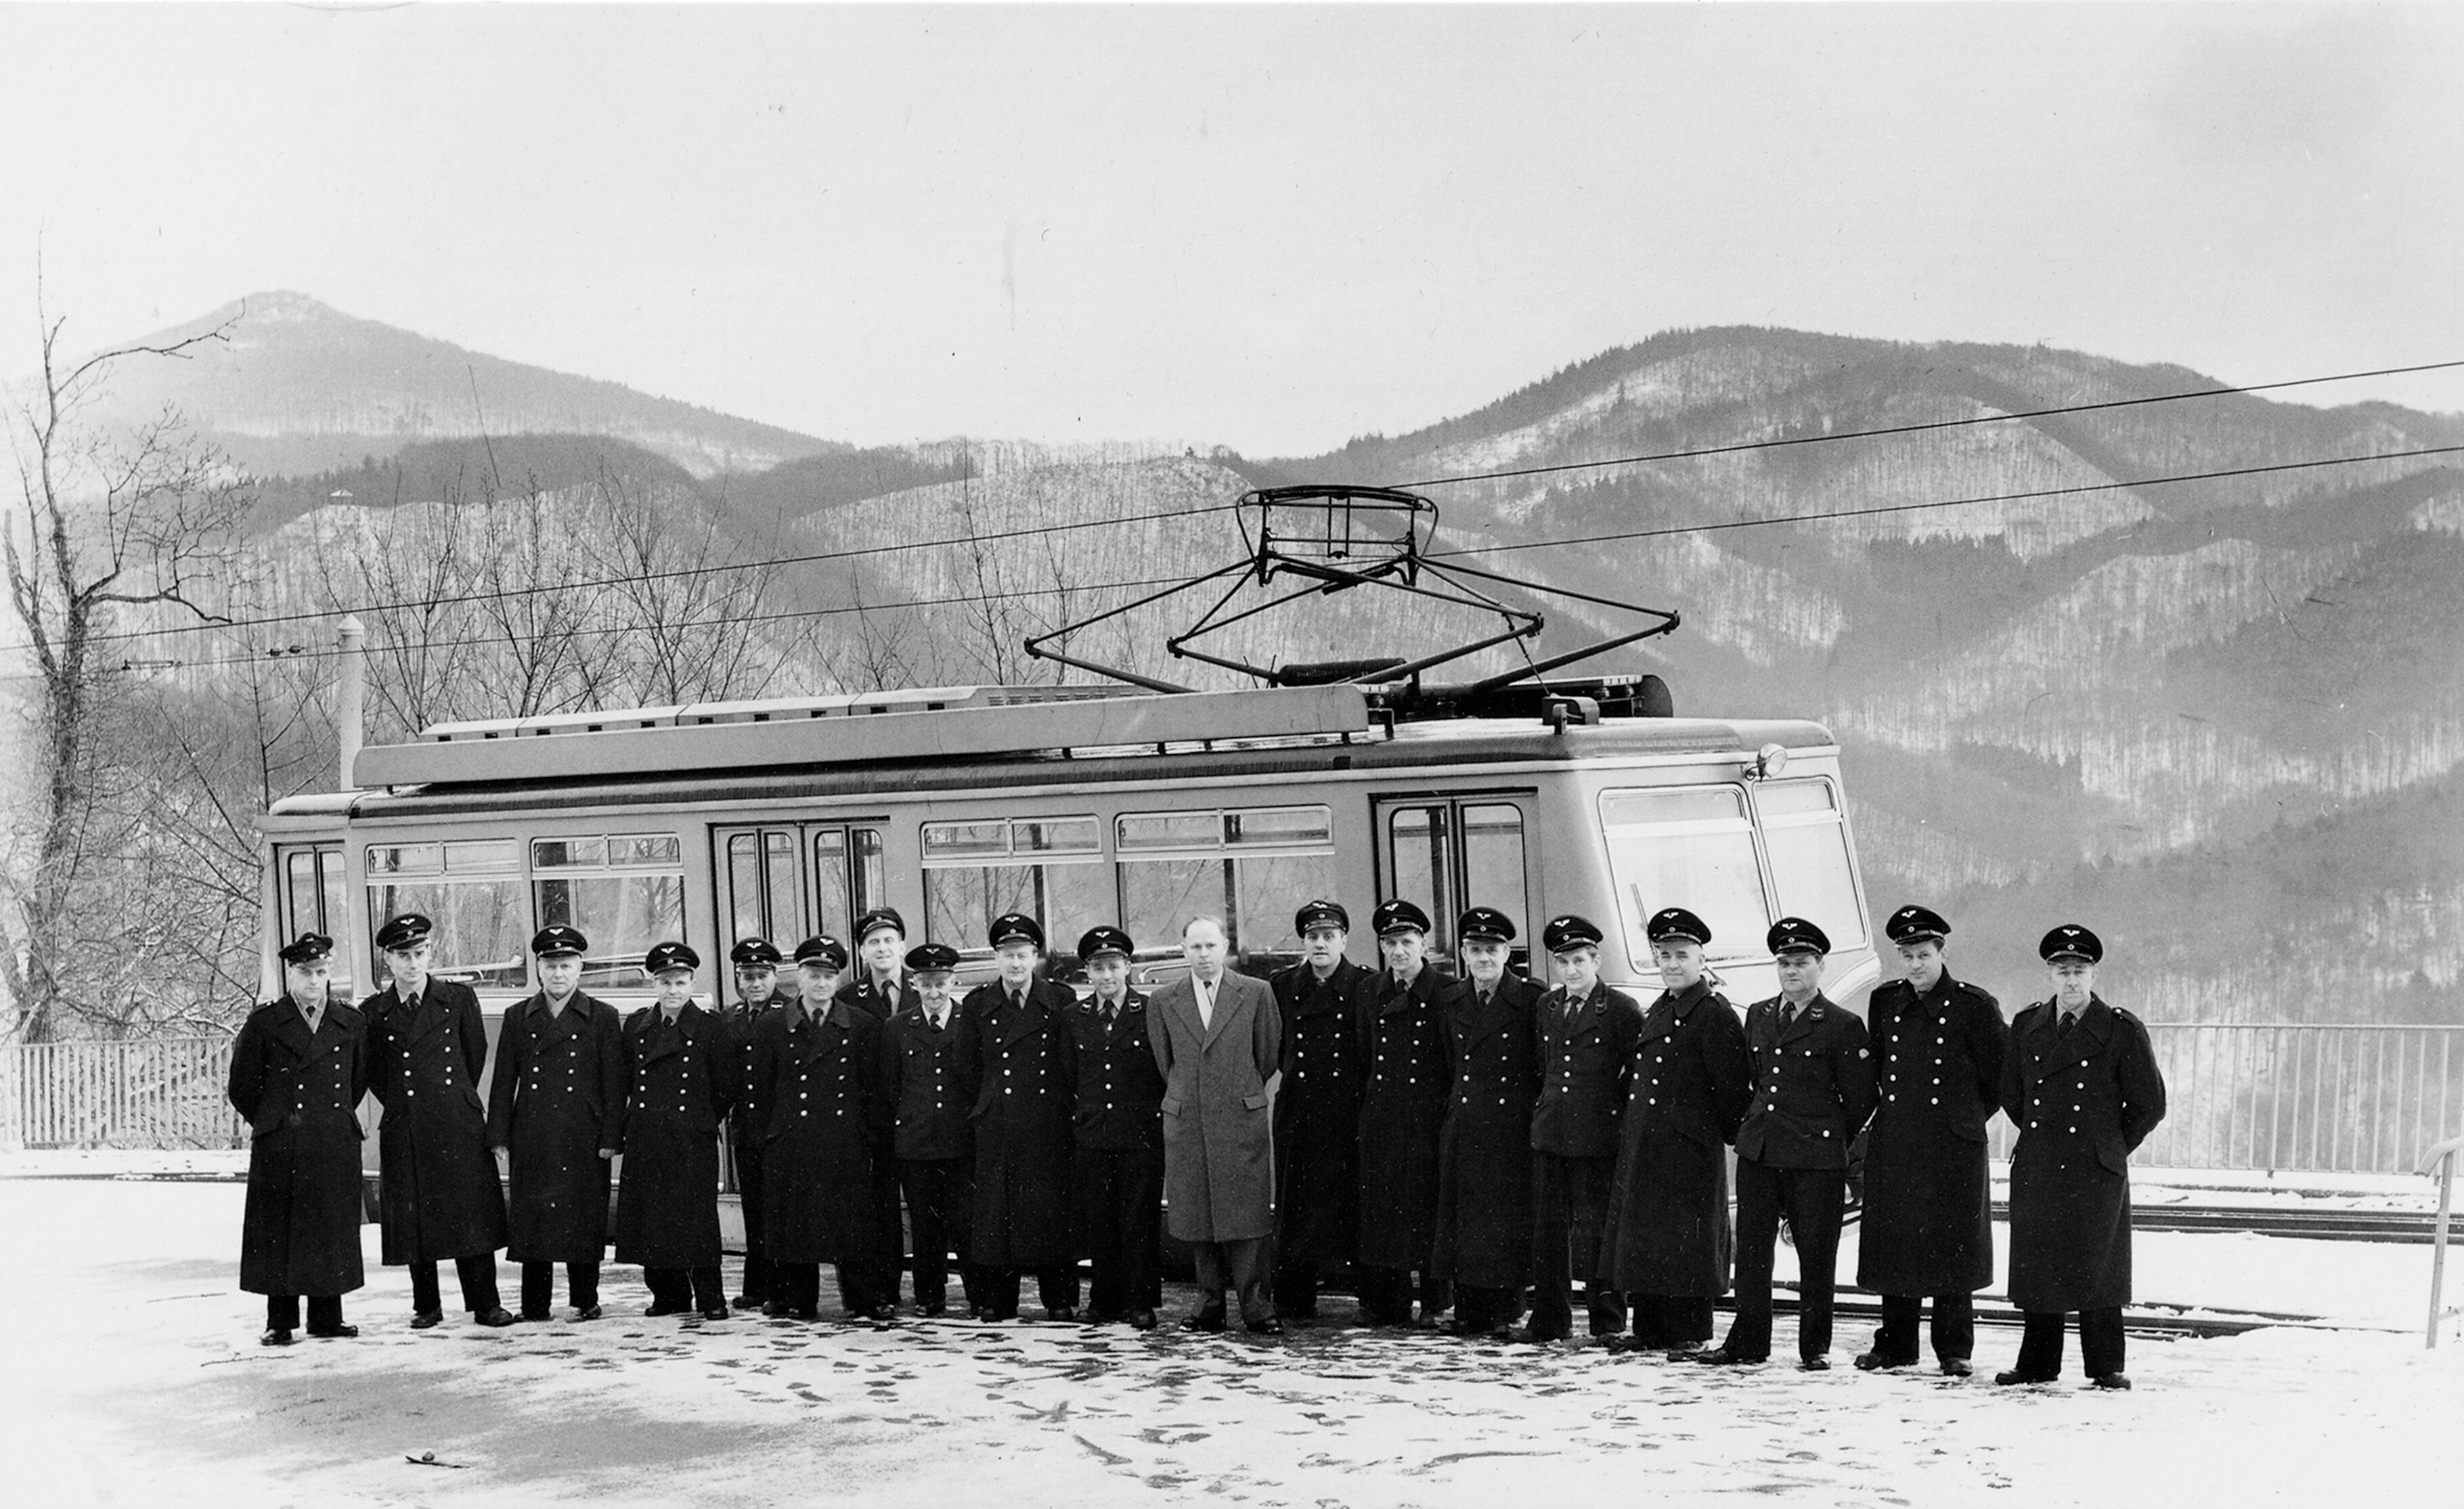 BAHNMITARBEITER
Anlässlich des Jubiläums 1958 entstand eine Reihe
von Gruppenaufnahmen der Mitarbeiter vor einem
Triebwagen an der Bergstation.